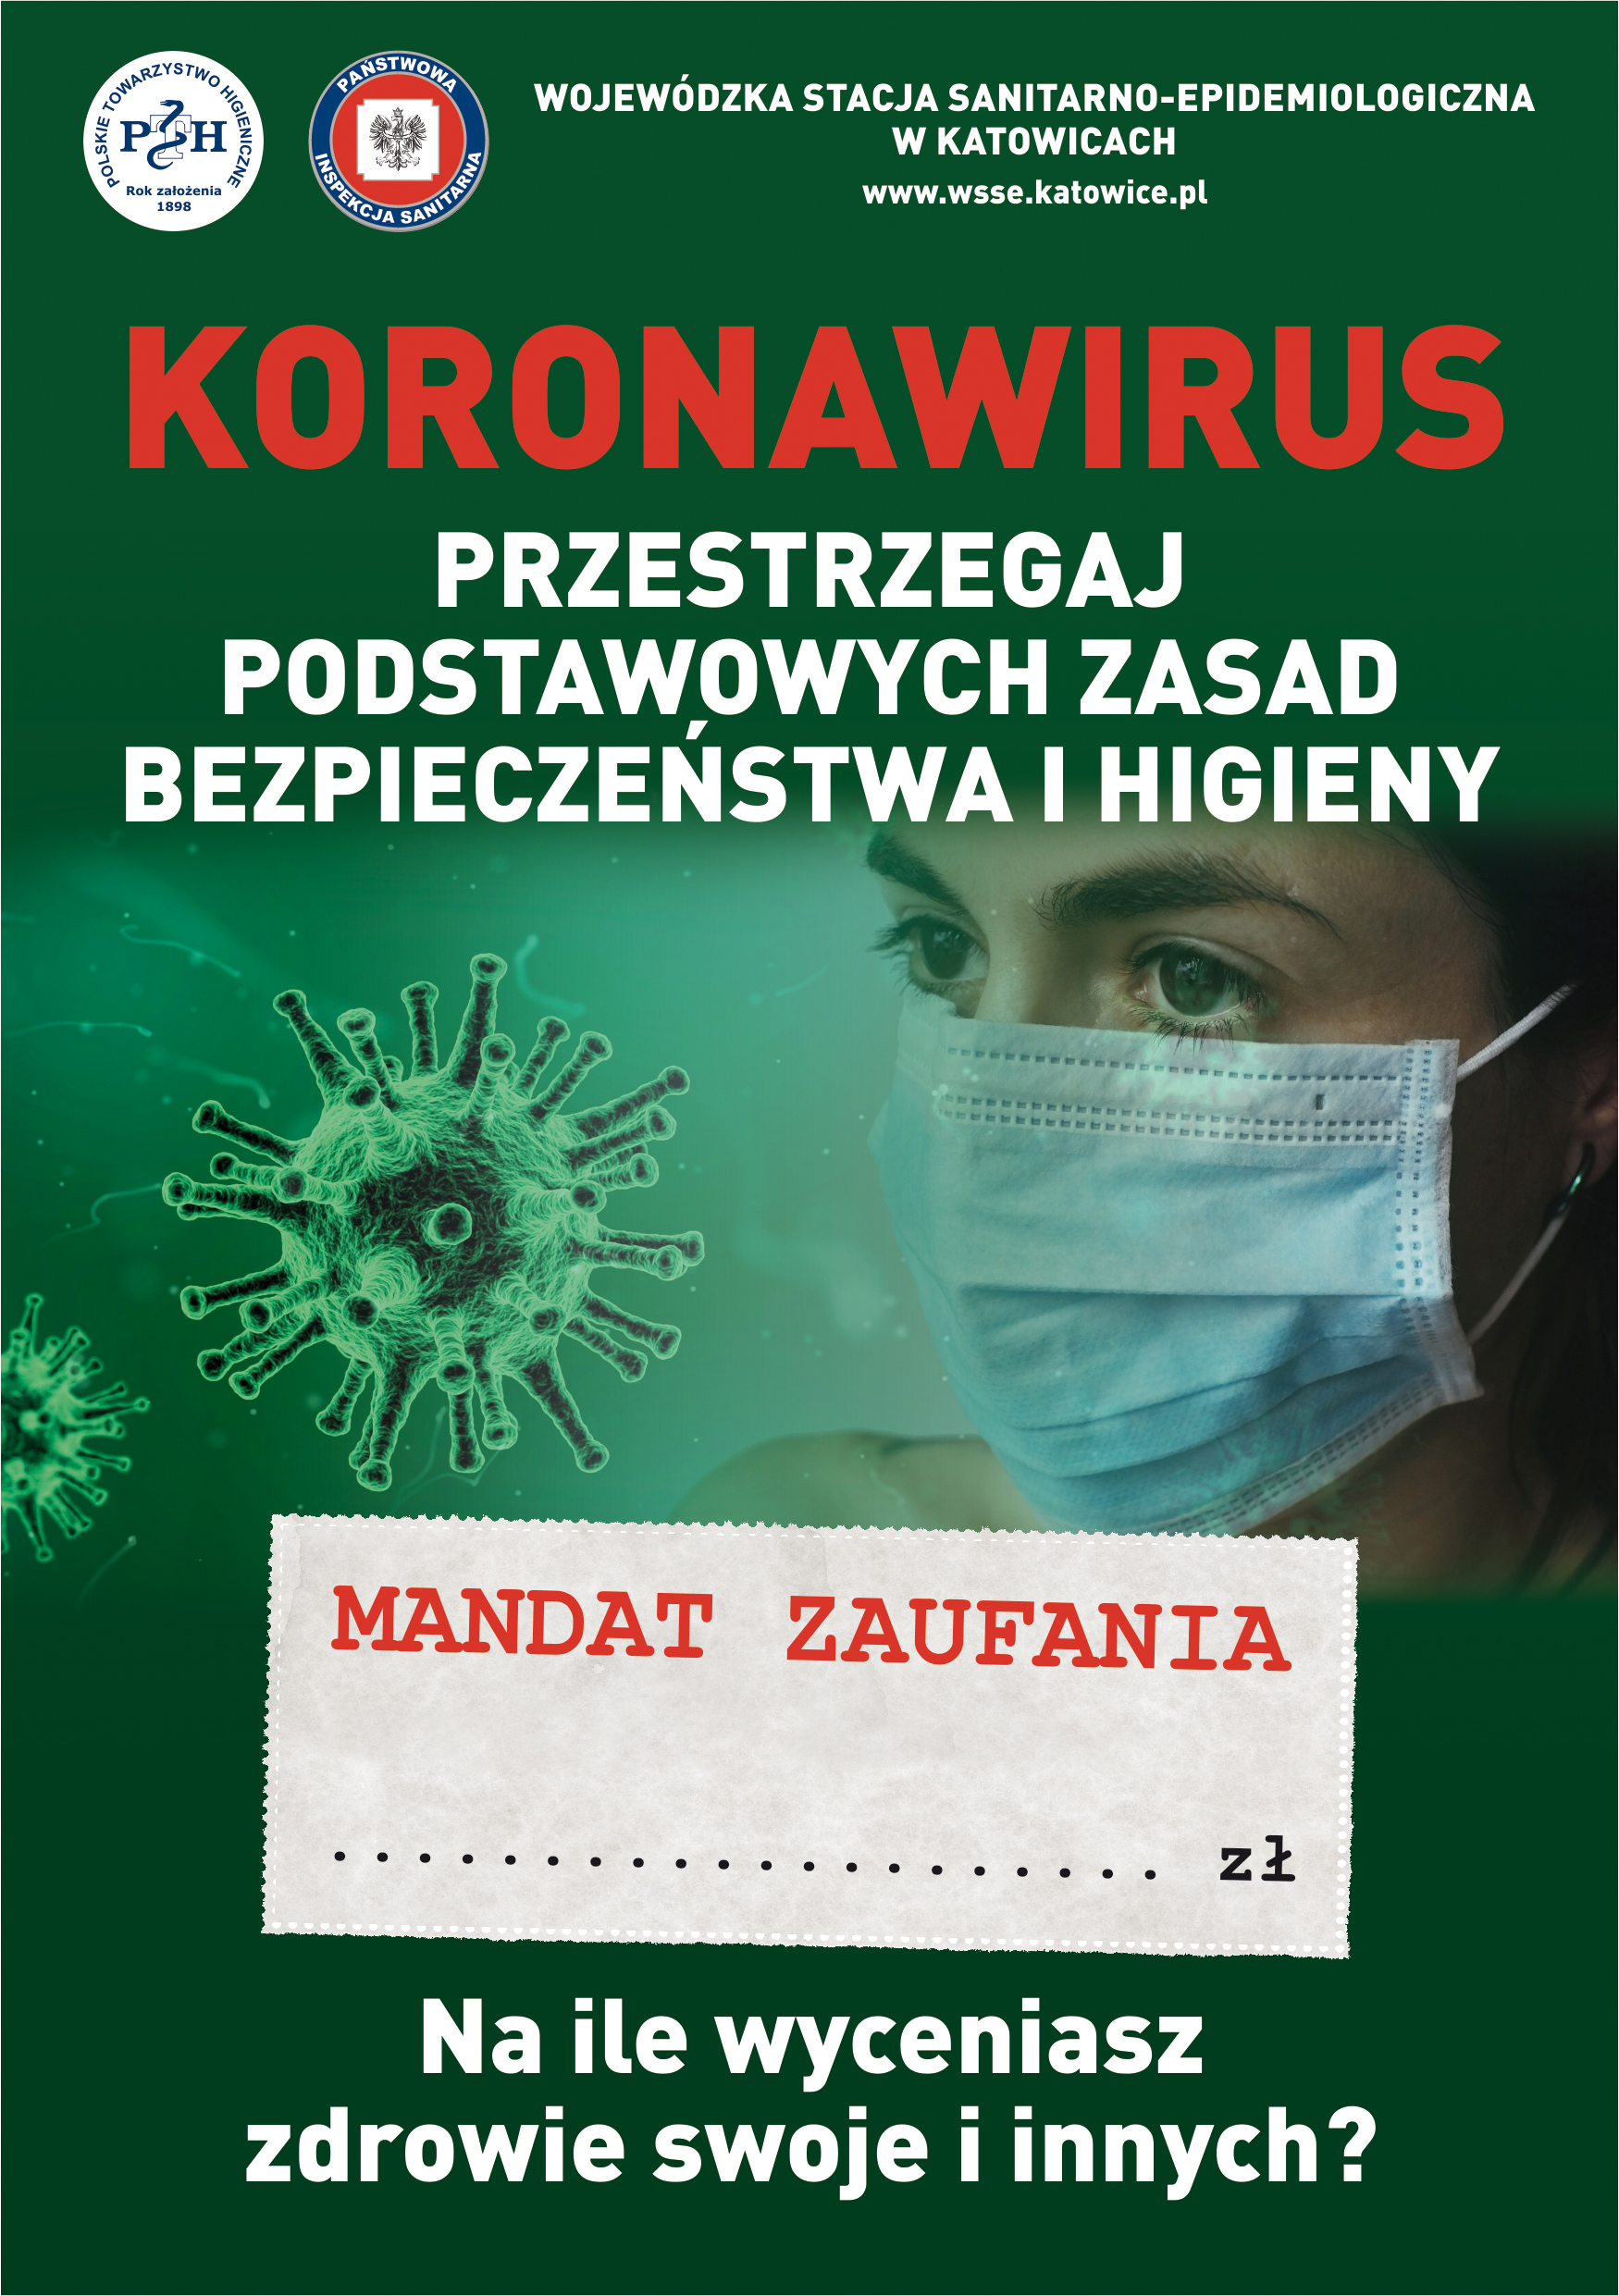 Plakt z koronawirusem i napisem przestrzegaj zasad bezpieczeństwa i higieny